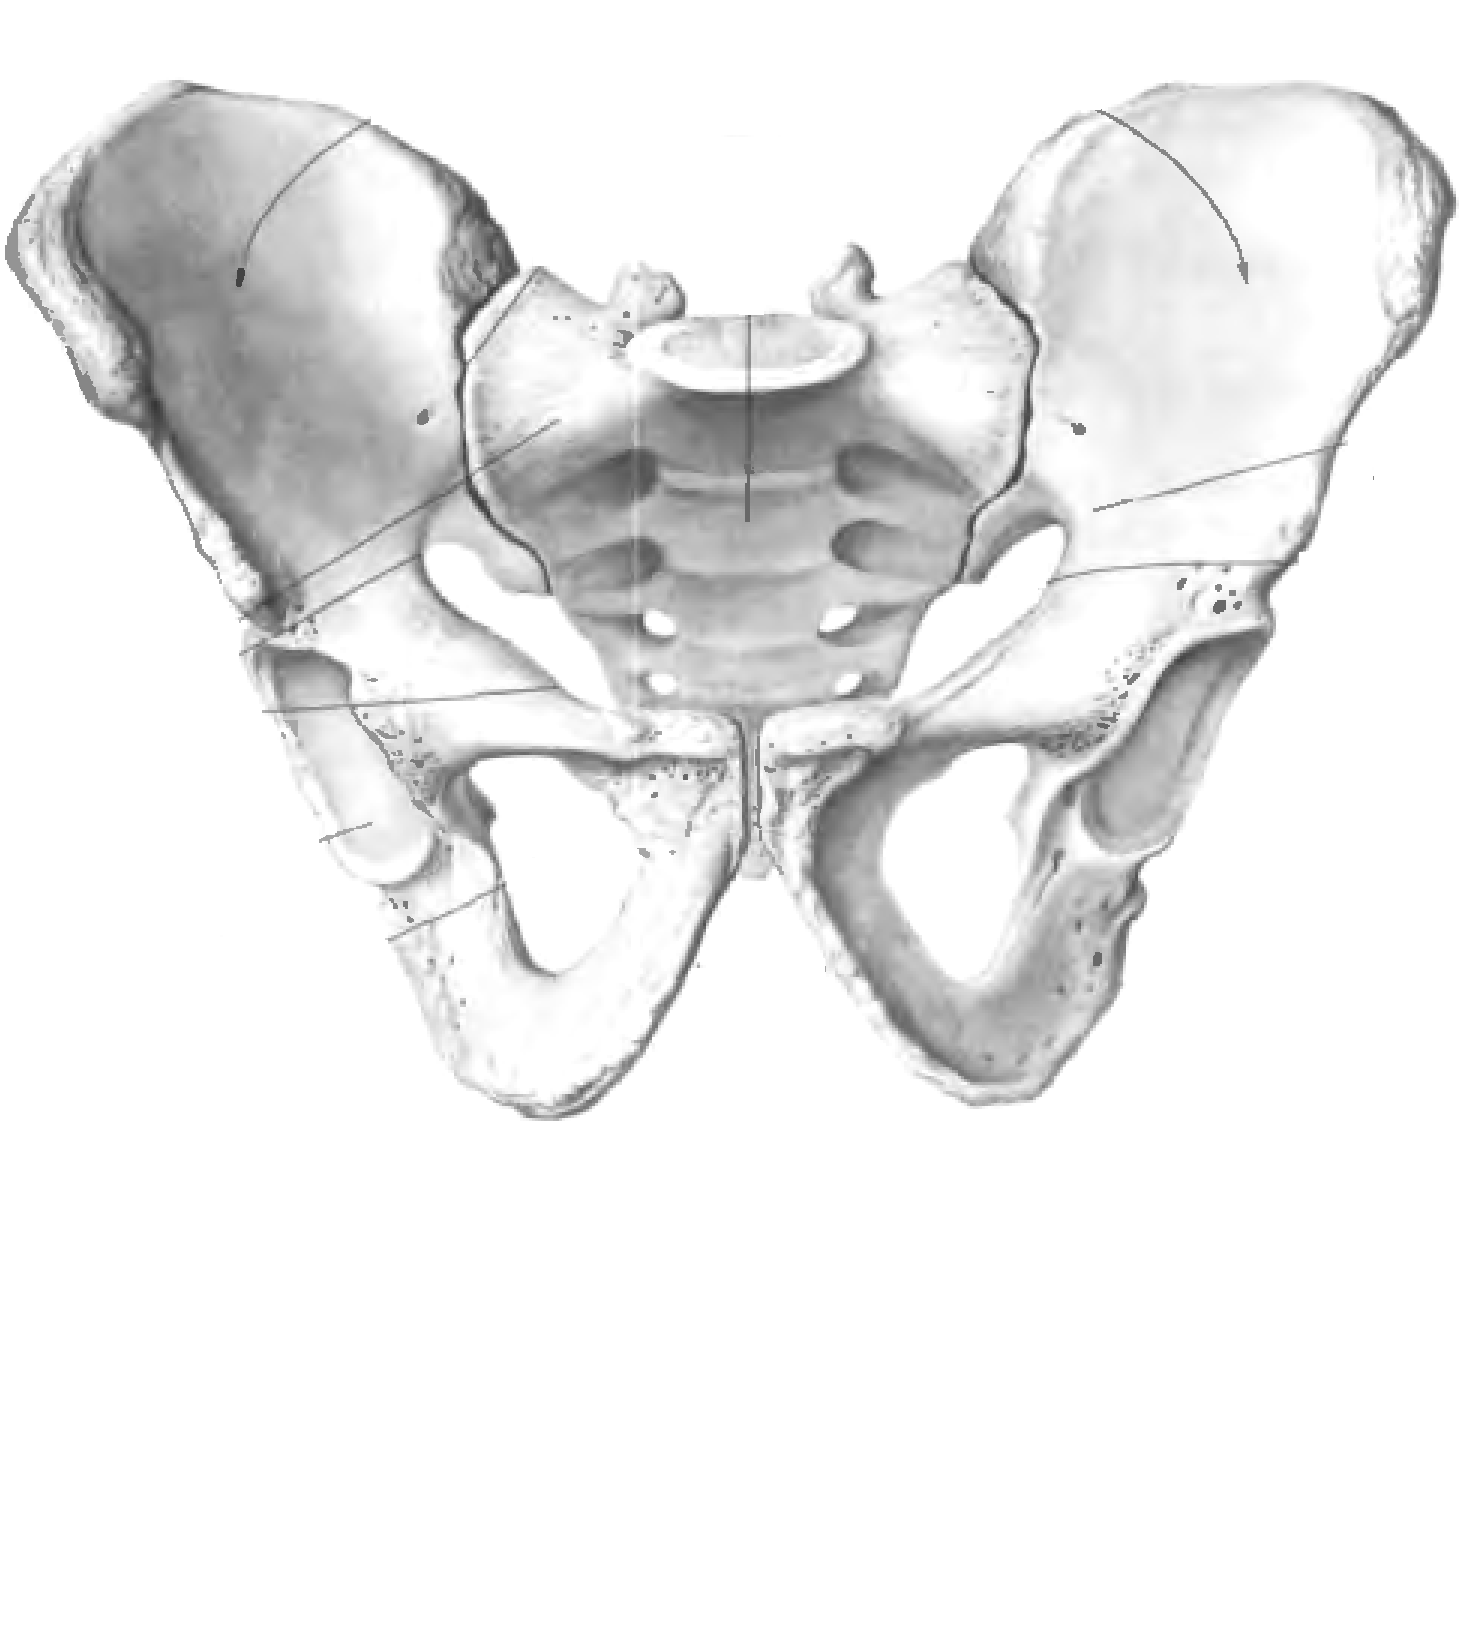 Нижняя подвздошная кость. Кости таза анатомия подвздошная кость. Подвздошная кость таза анатомия человека. Строение подвздошной кости таза. Тазовая кость анатомия Синельников.